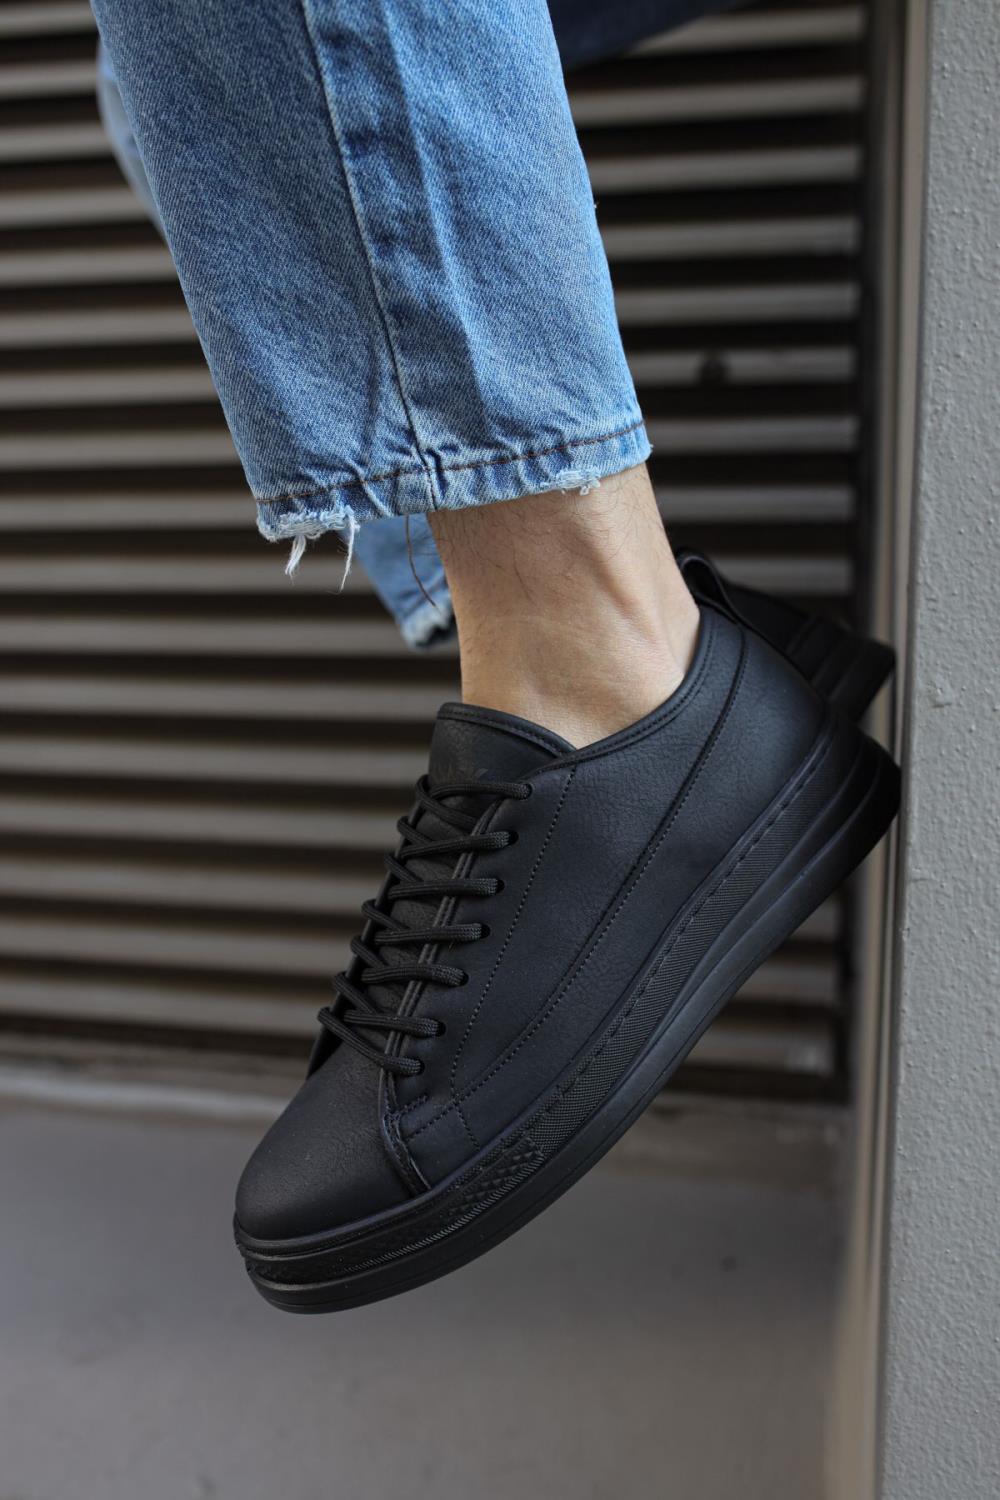 Knack Sneakers Shoes 010 Black (Black Sole) - STREETMODE ™